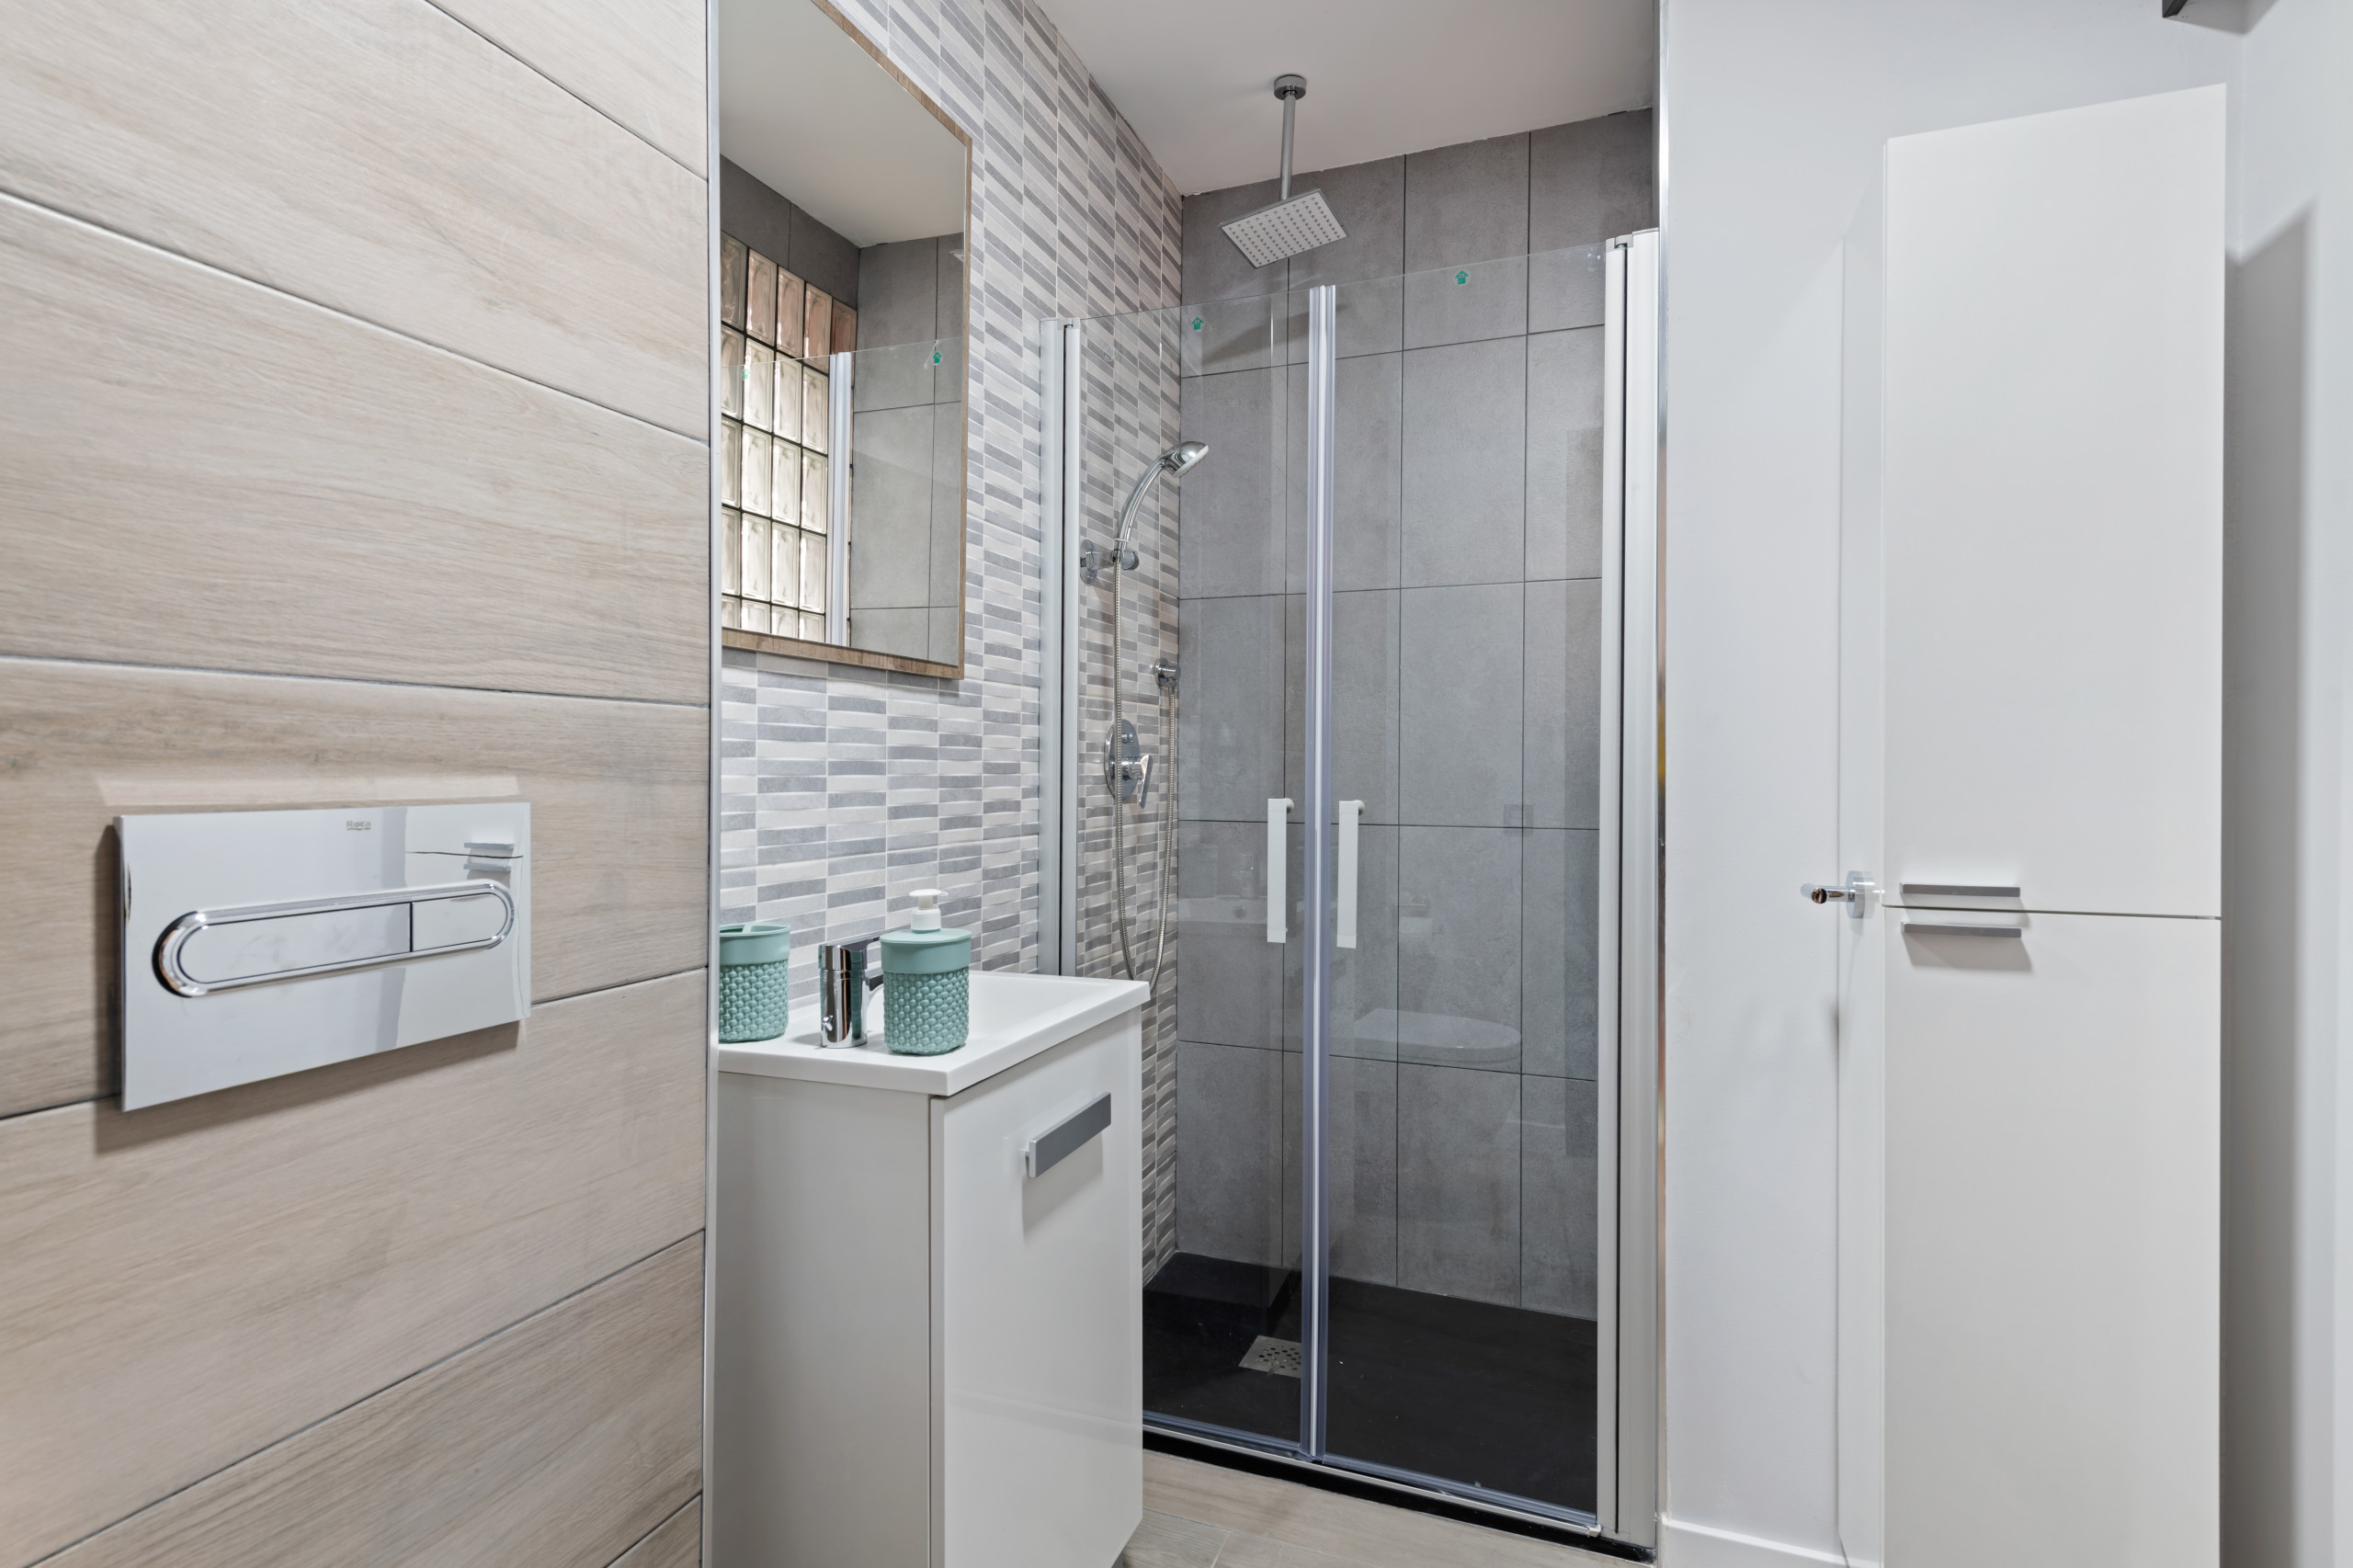 Baños diseñados para tu espacio con el mayor aprovechamiento del espacio.